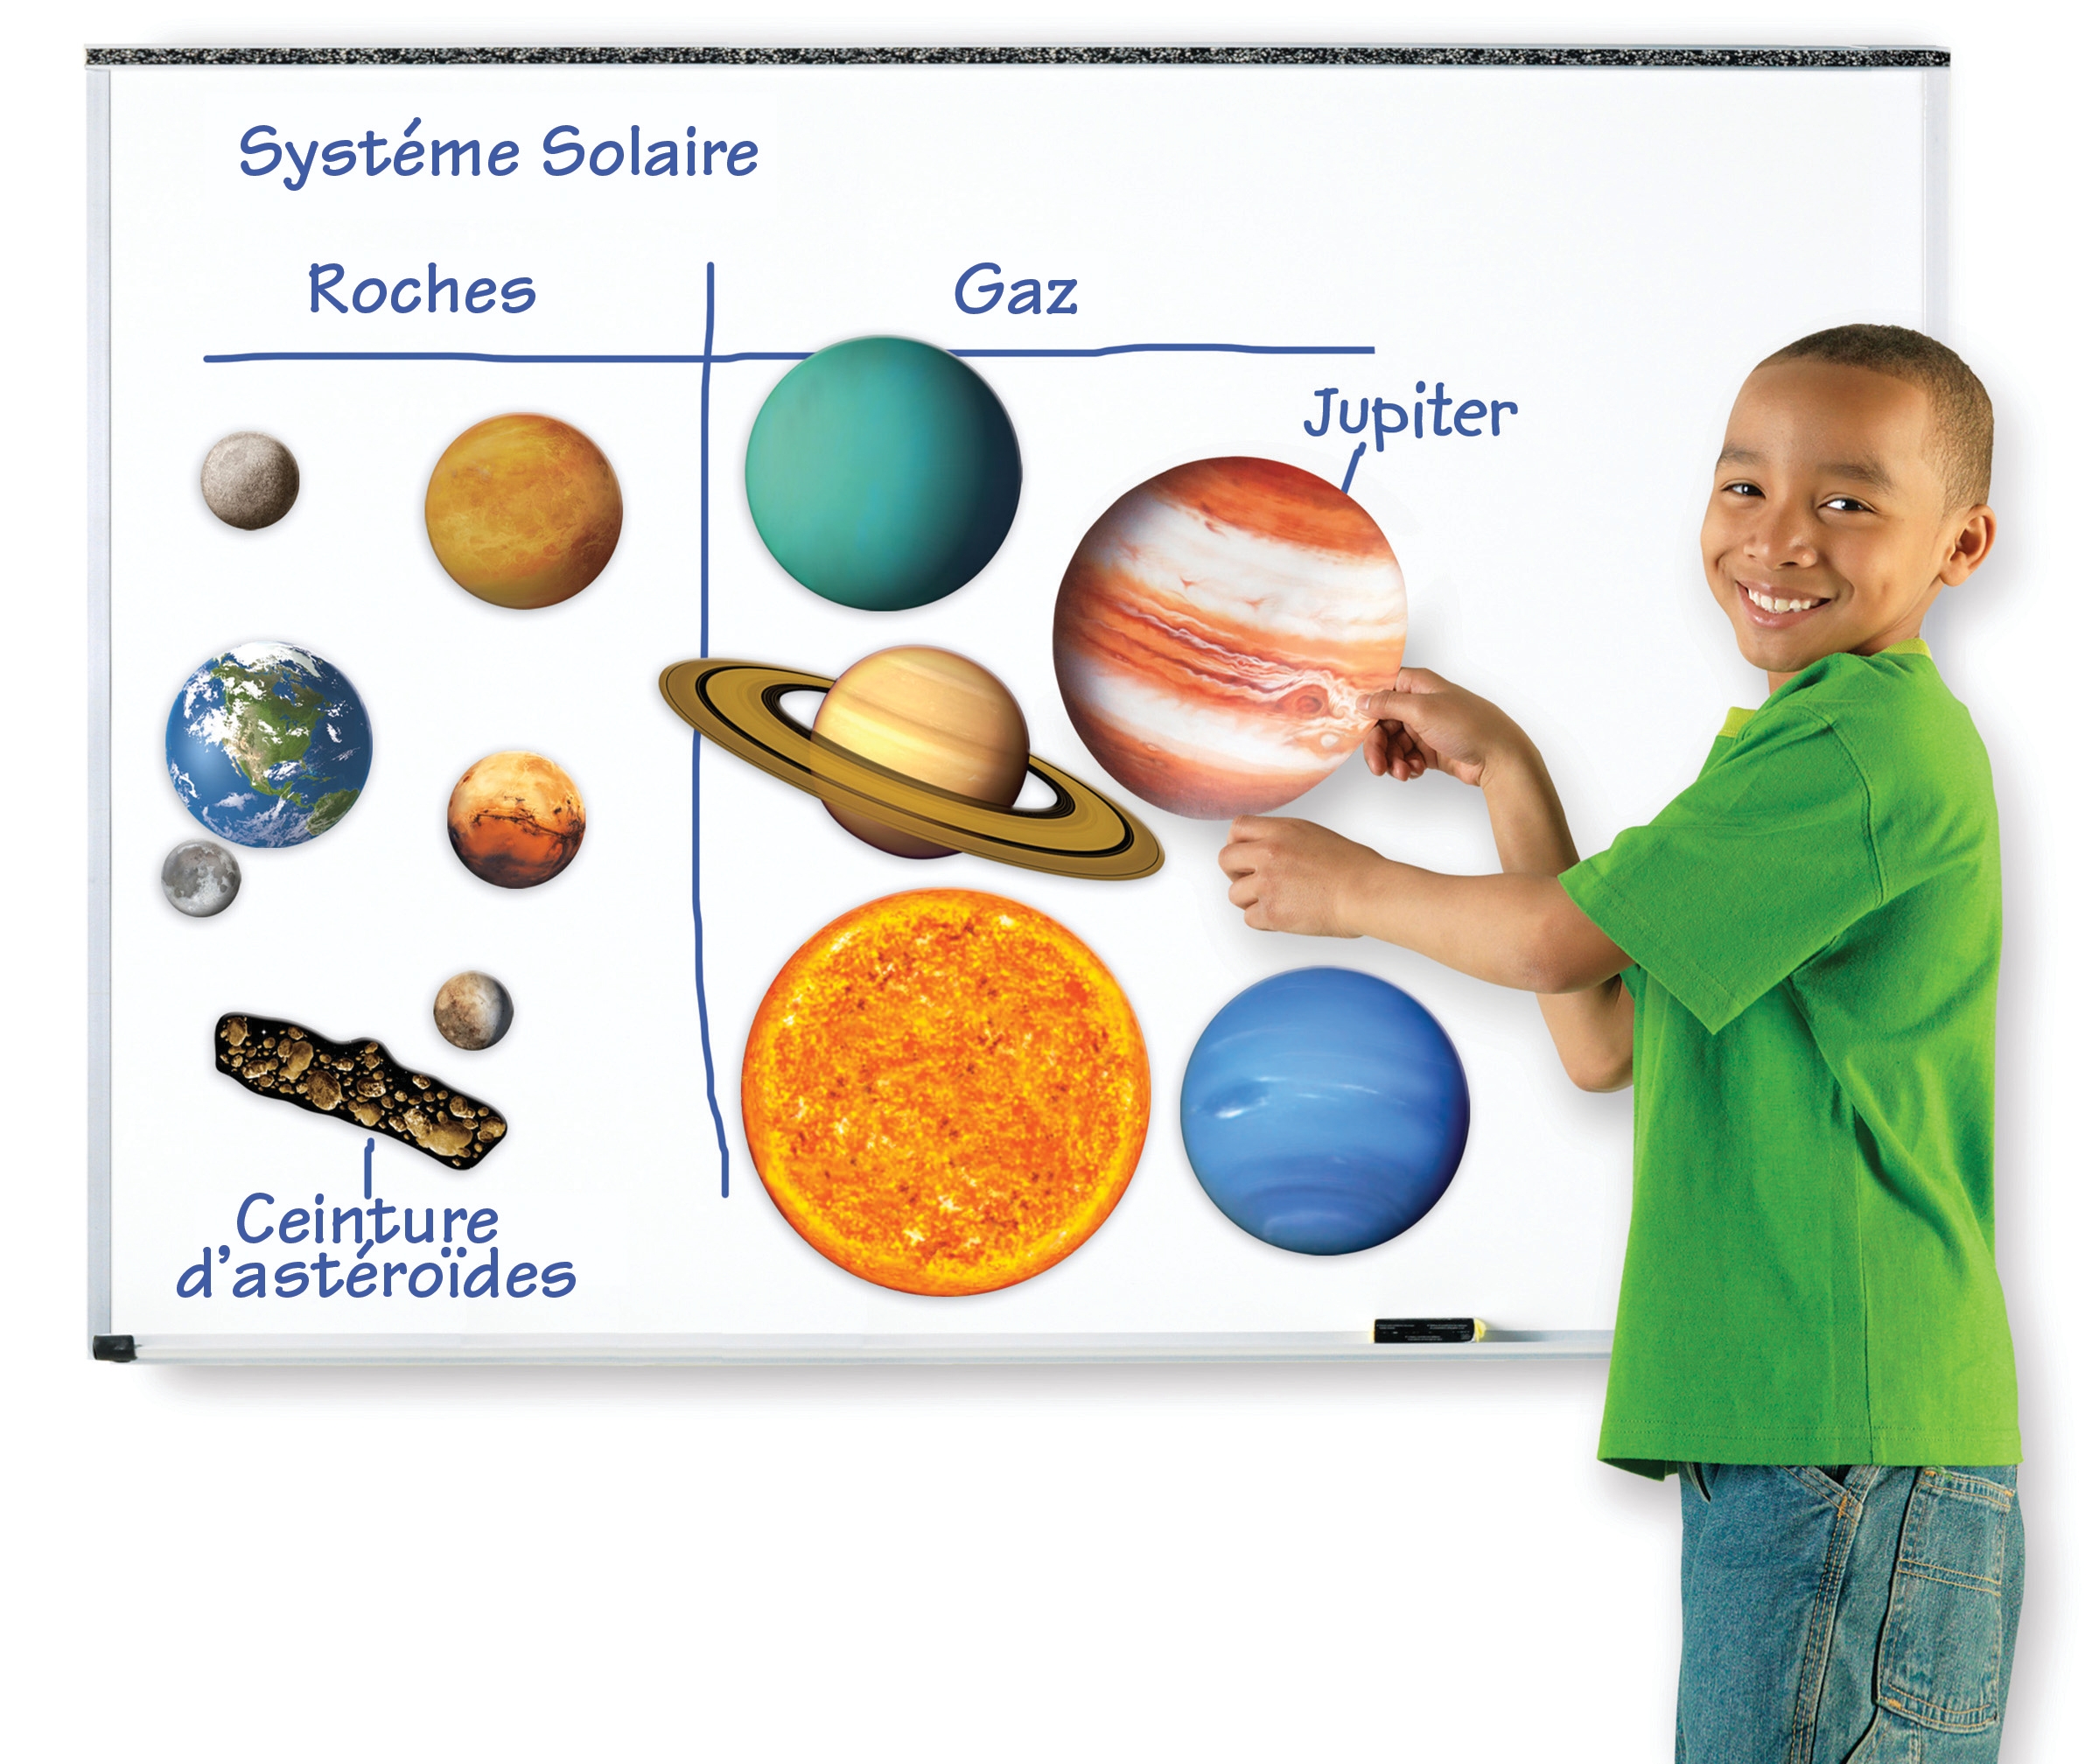 Apprendre le système solaire et ses planètes aux enfants - Family